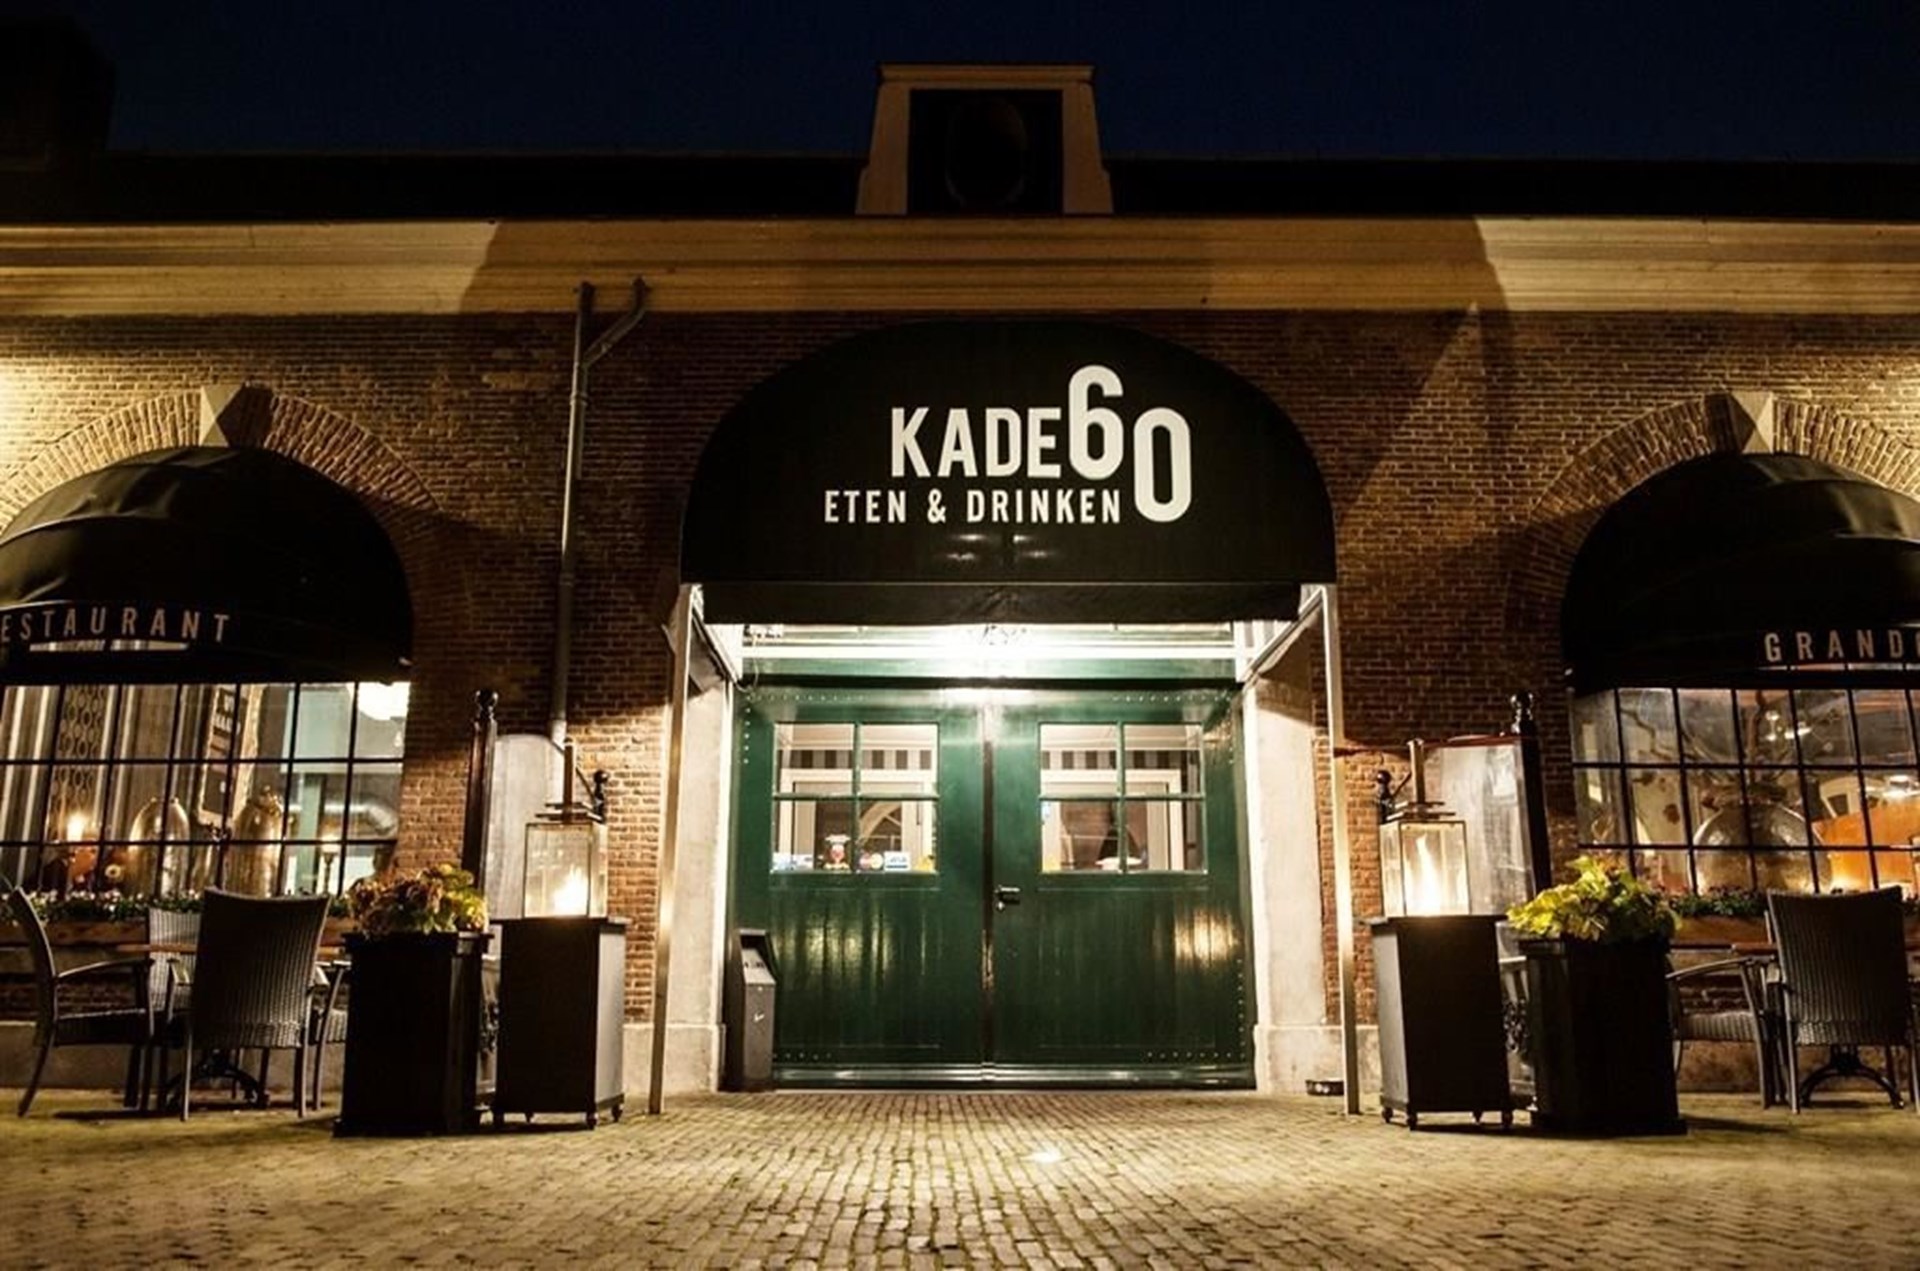 Restaurant “Kade60” banner